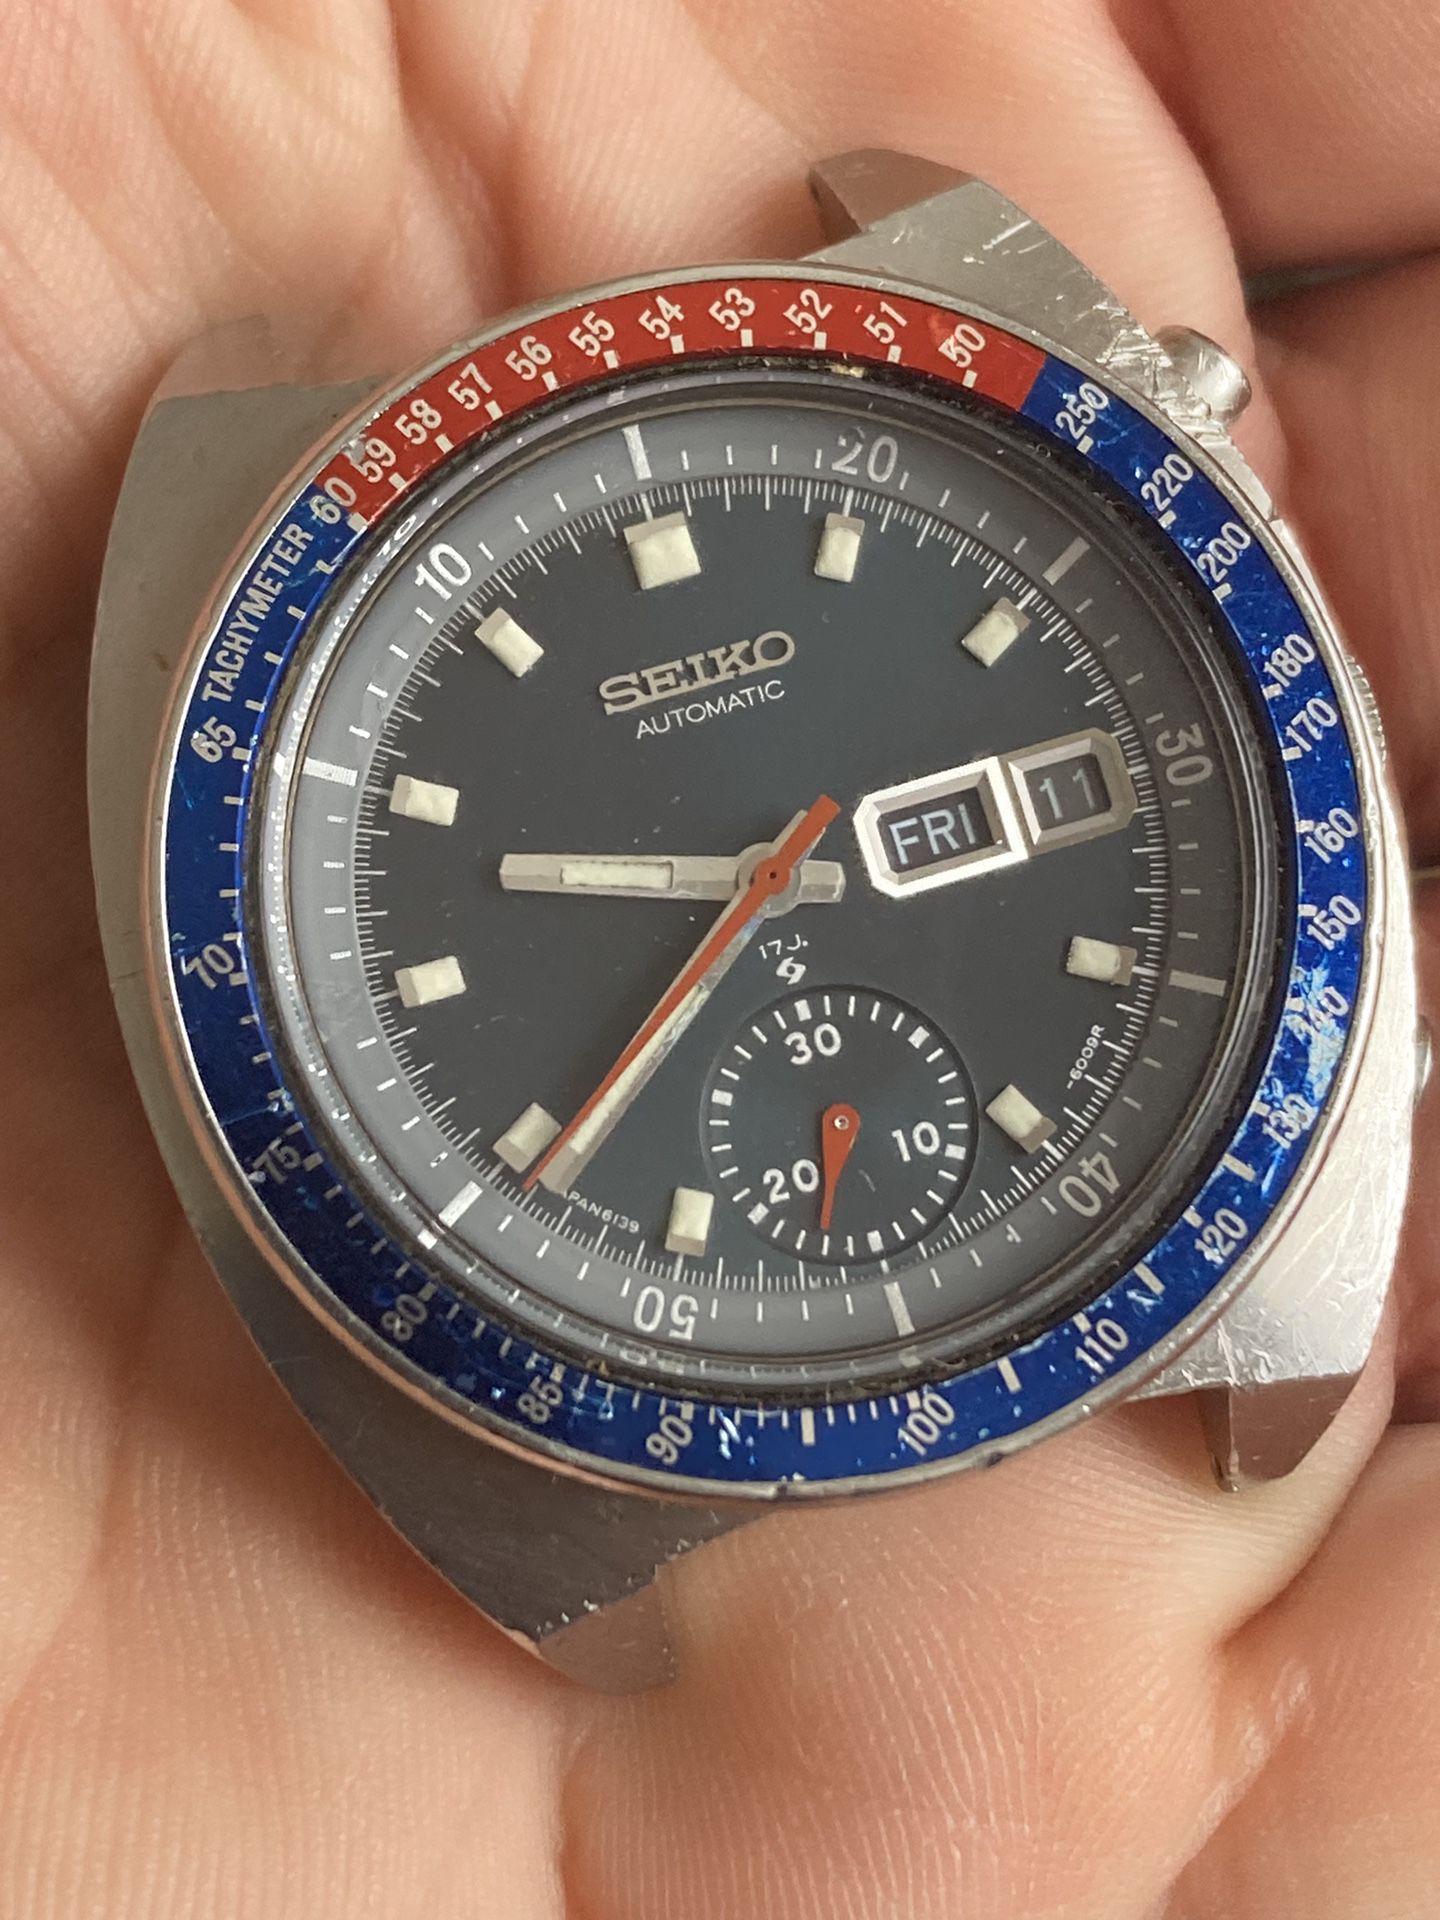 Vintage Seiko Chronograph Watch